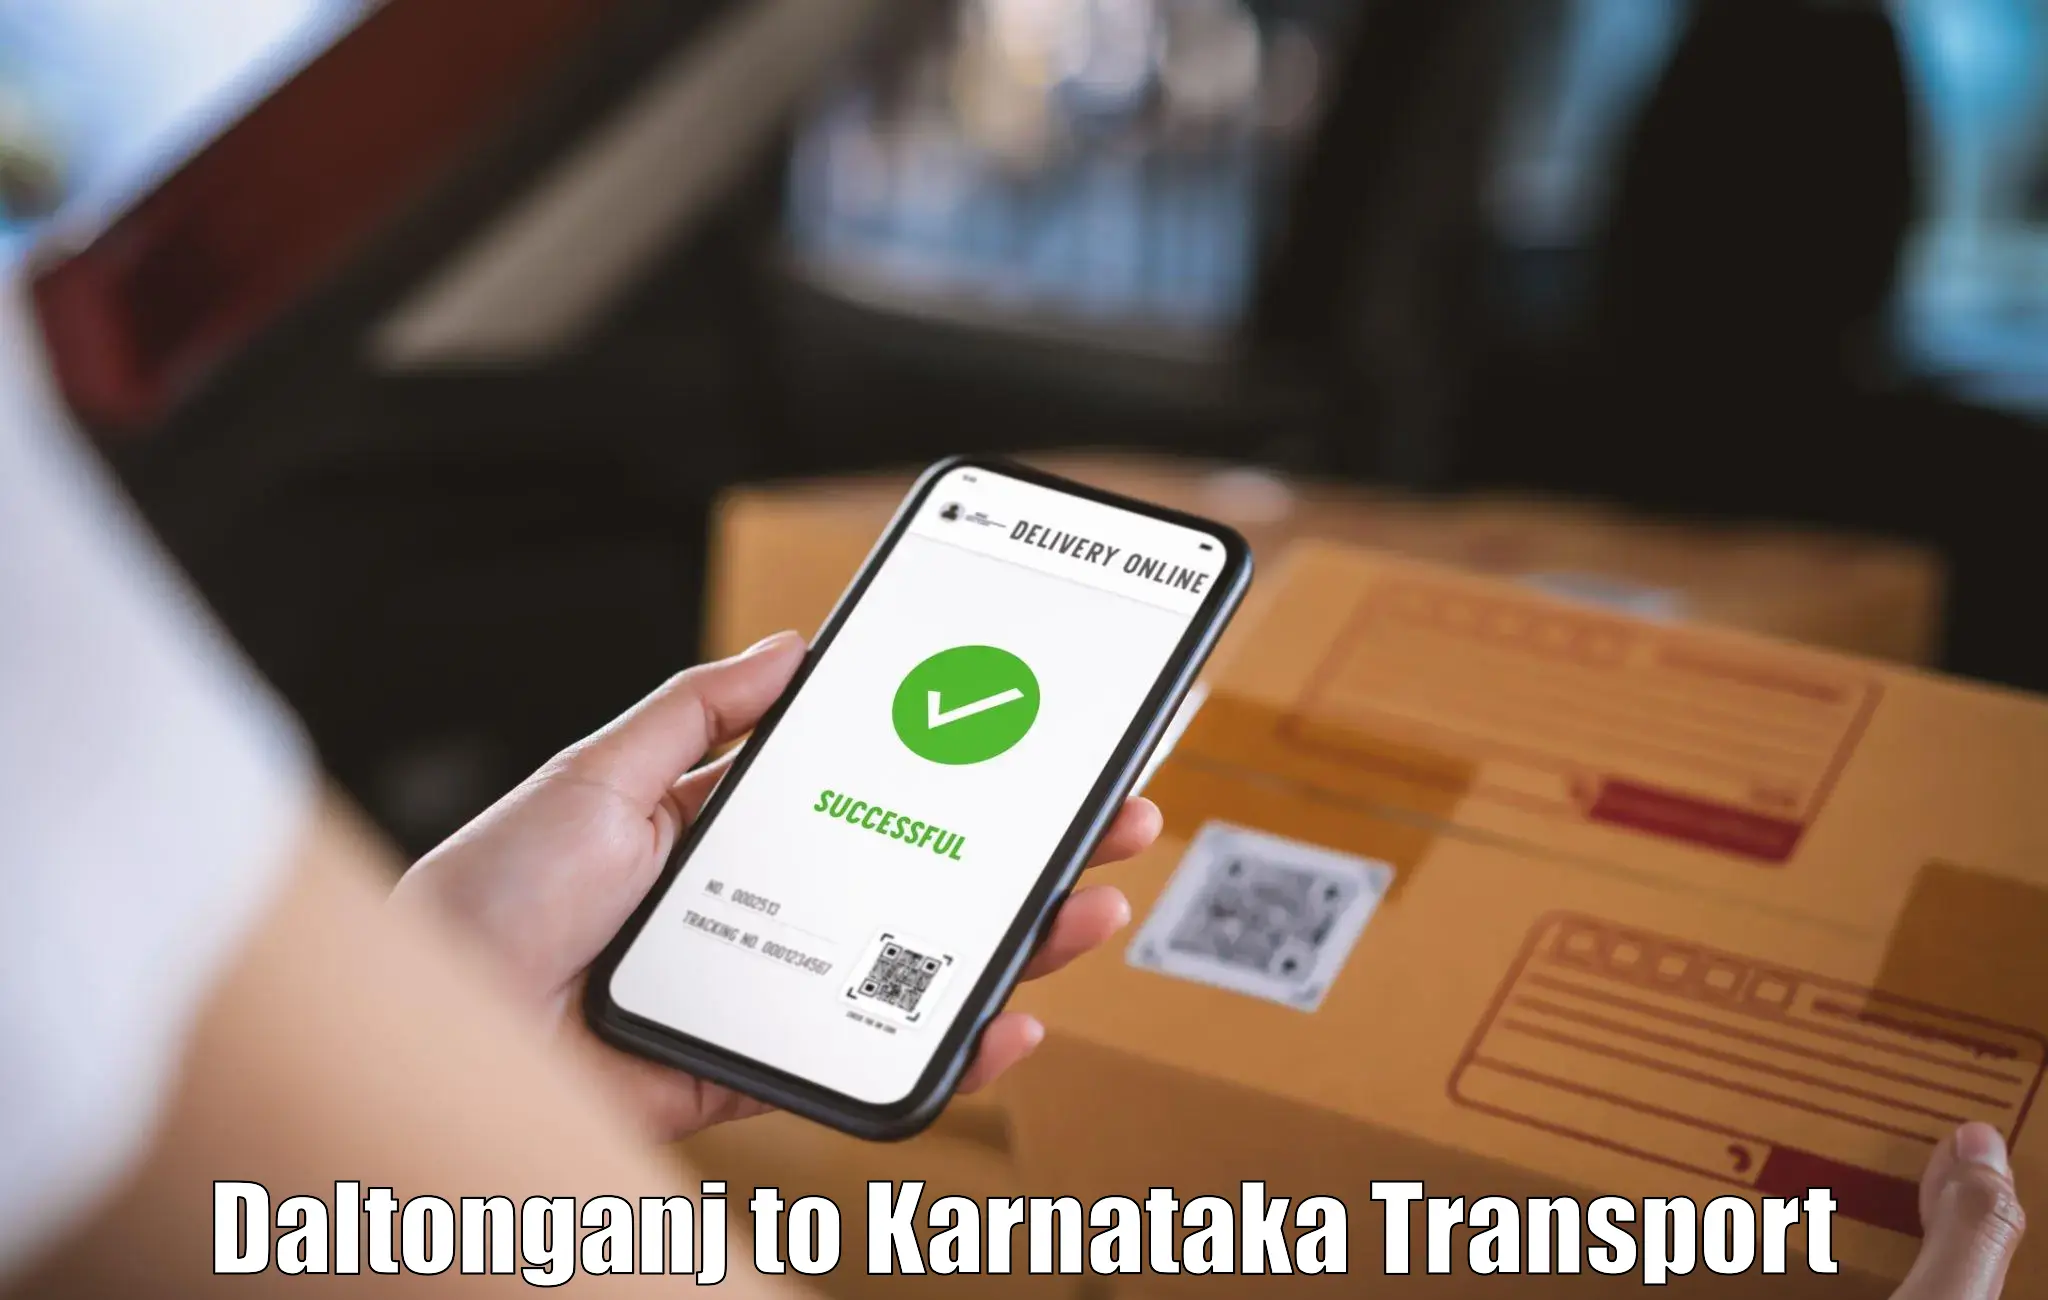 Road transport online services Daltonganj to Karnataka